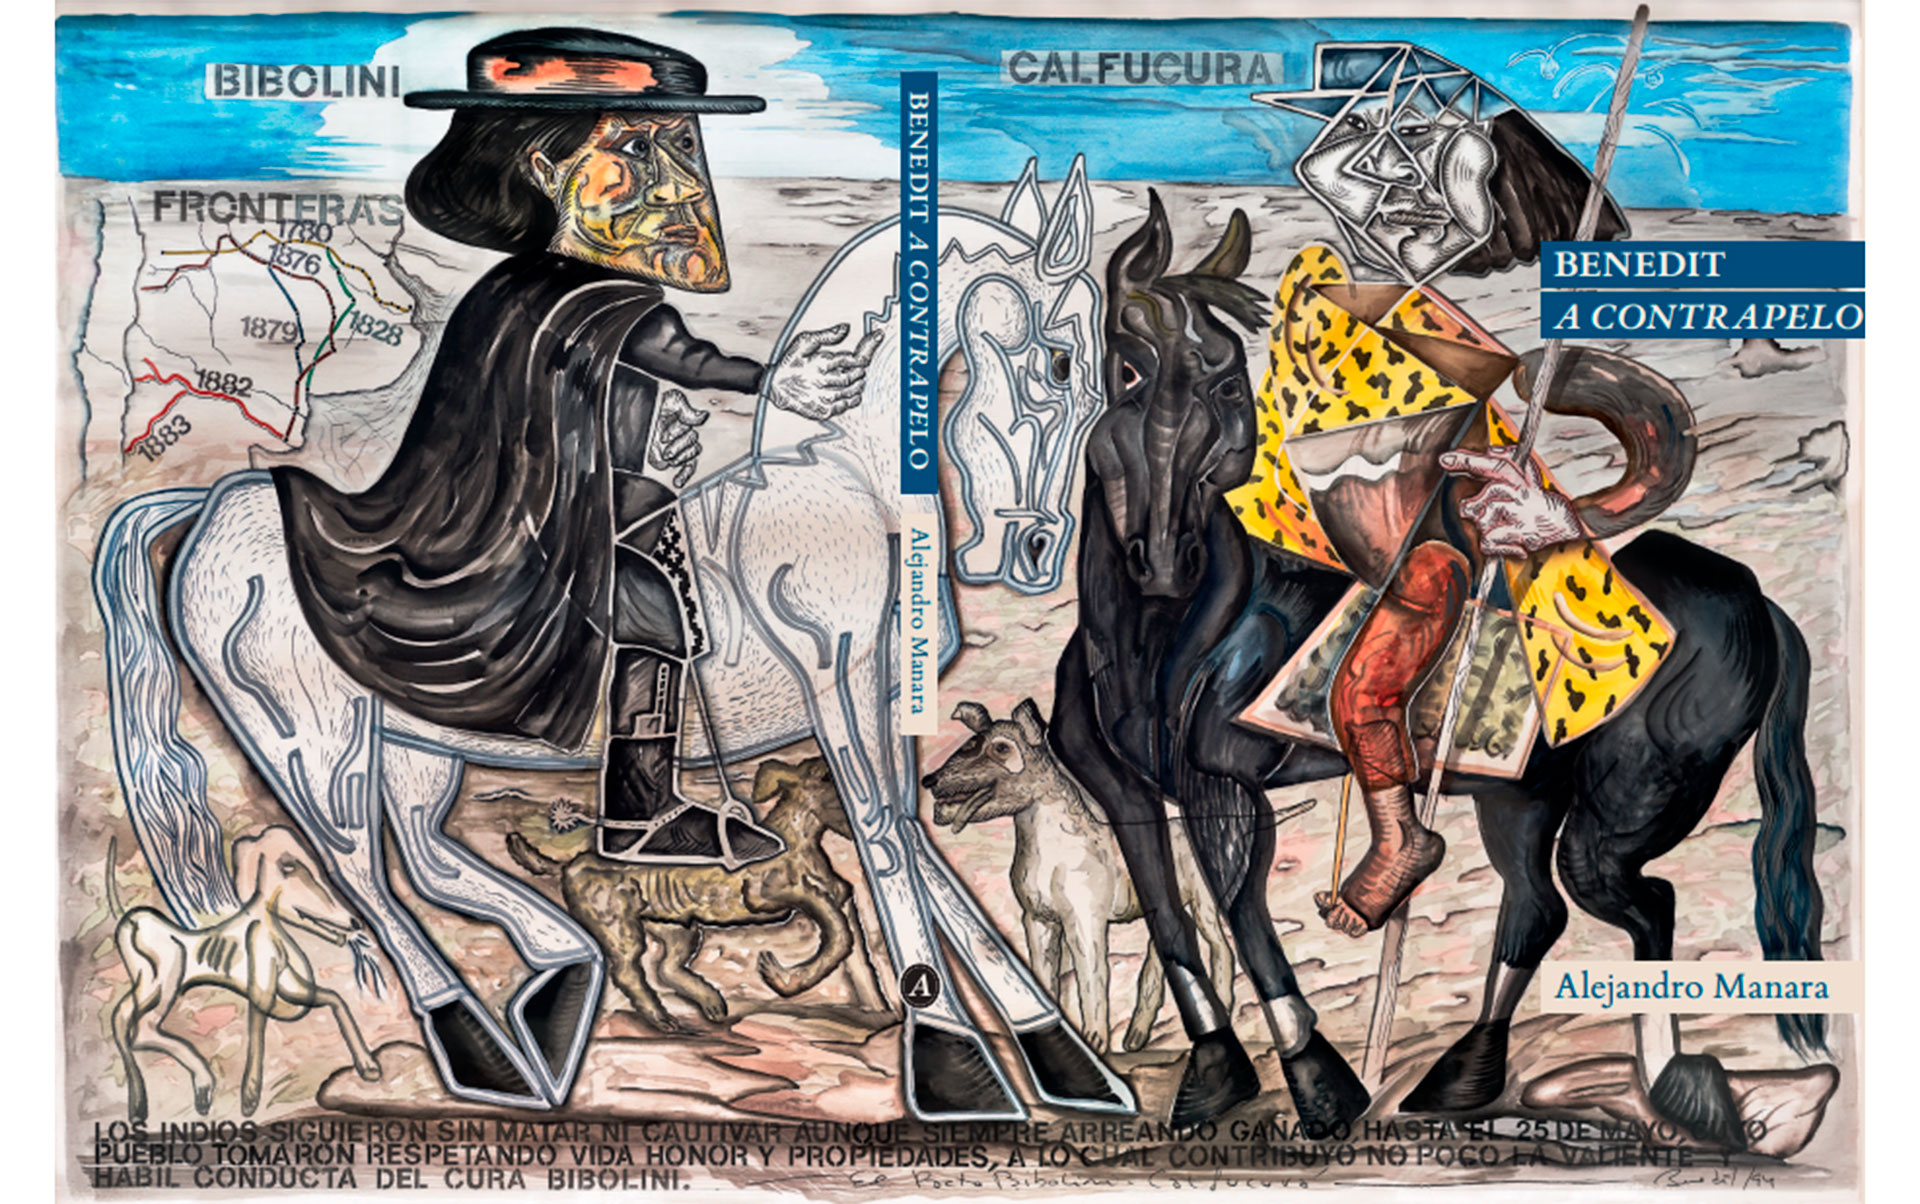 Tapa y contratapa desplegada de "Benedit a contrapelo" (El Ateneo), de Alejandro Manara. Ilustración: "El pacto Bibolini-Calfucurá", de 1994